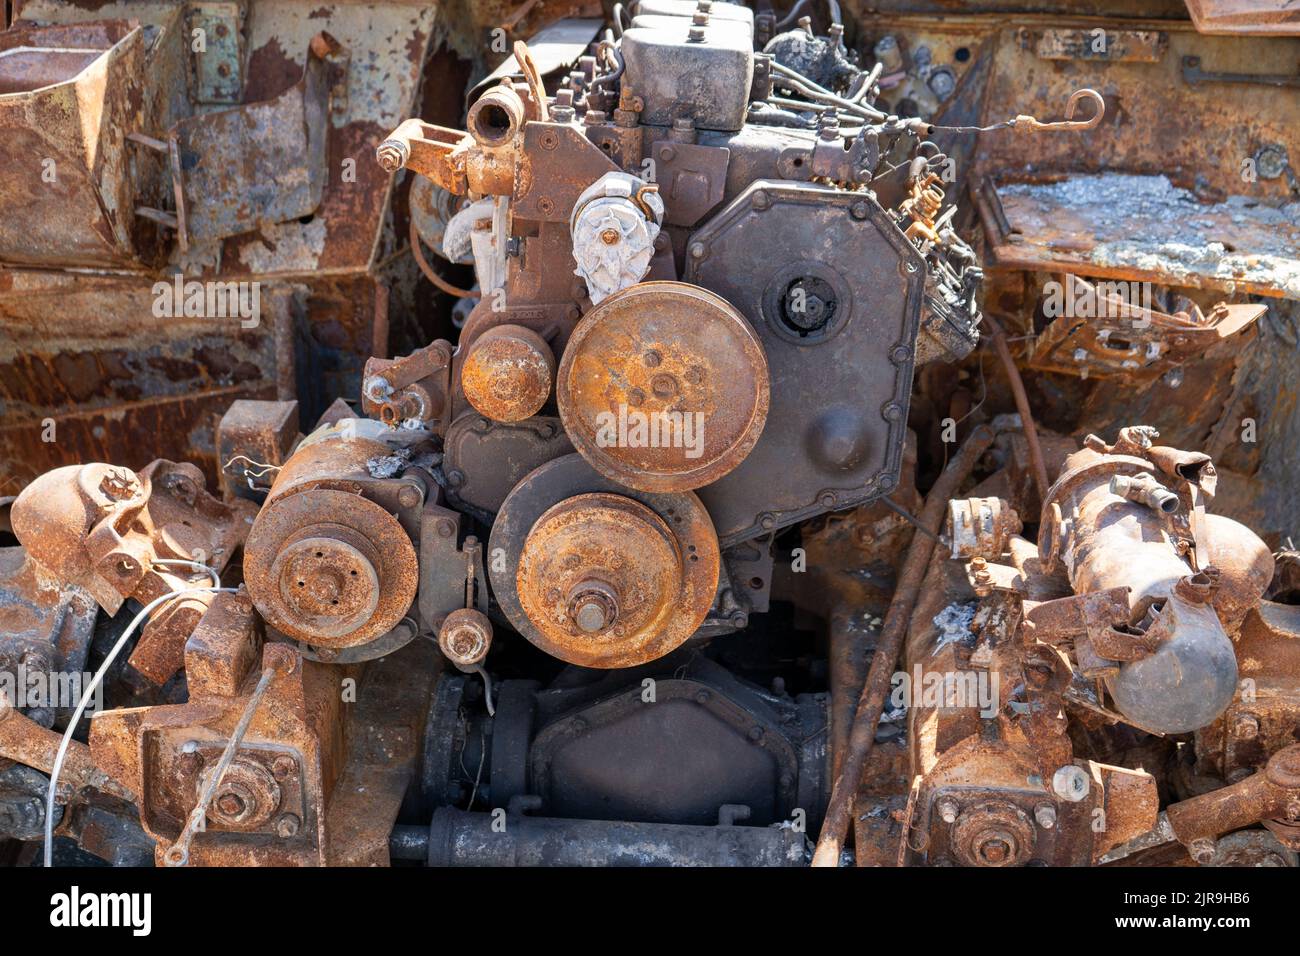 Ein Fragment eines rostigen ausgebrannten Autos Russlands. Motor unter der Motorhaube. APC Armored Autosalon. Ausstellung der zerstörten verbrannten russischen Militärausrüstung auf Chreschatyk. Stockfoto